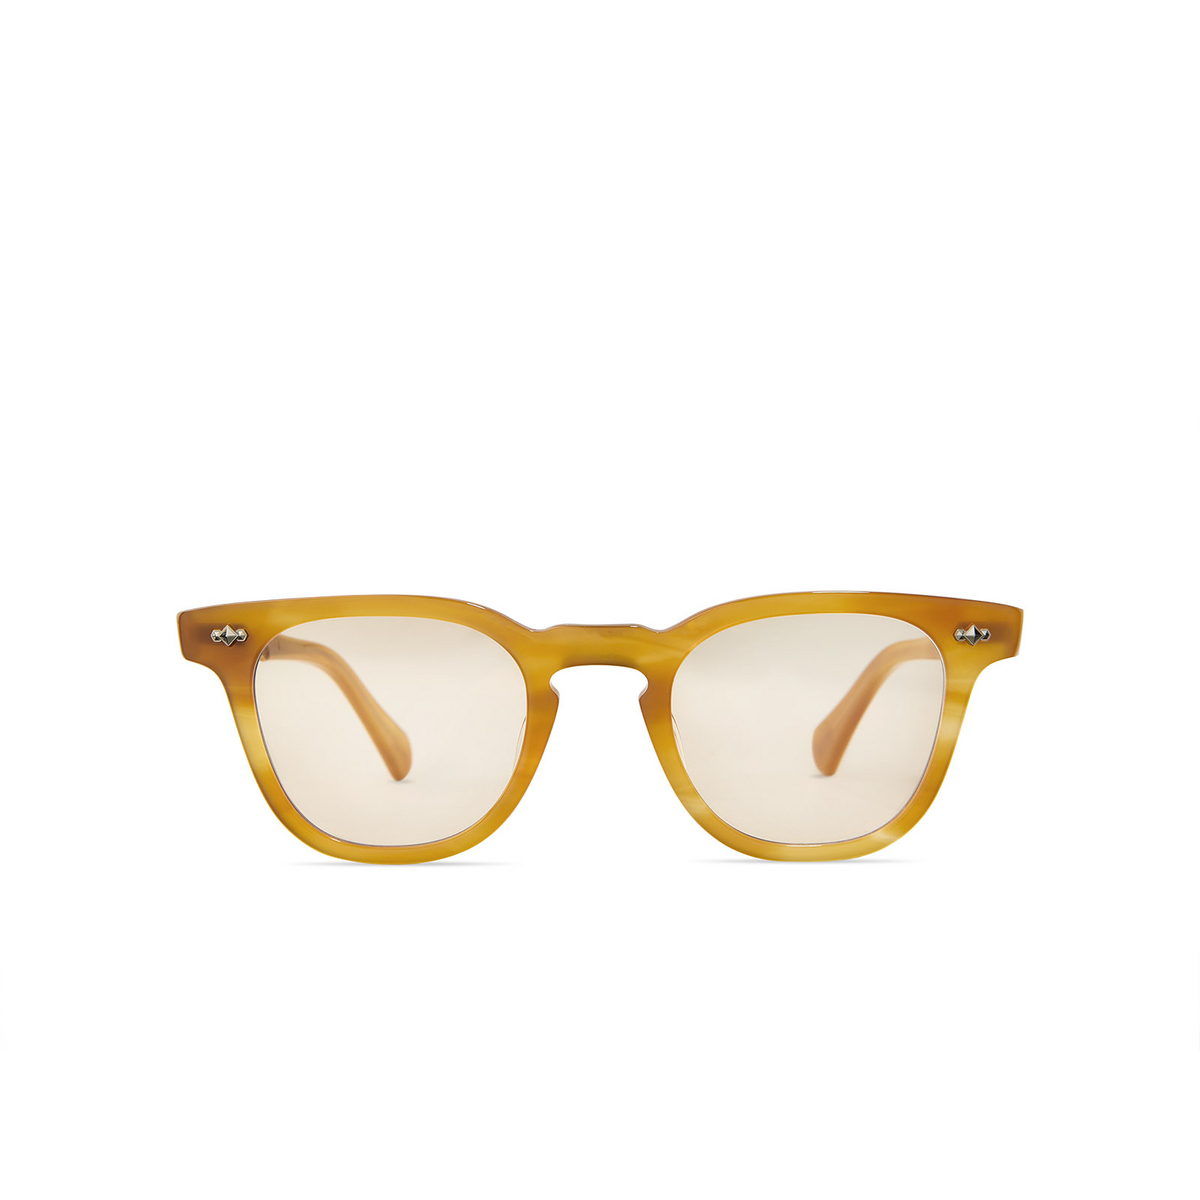 Mr. Leight DEAN C Eyeglasses HNYTRT-12KG-DEM BGE Honey Tortoise-12K White Gold-Demo Beige - front view